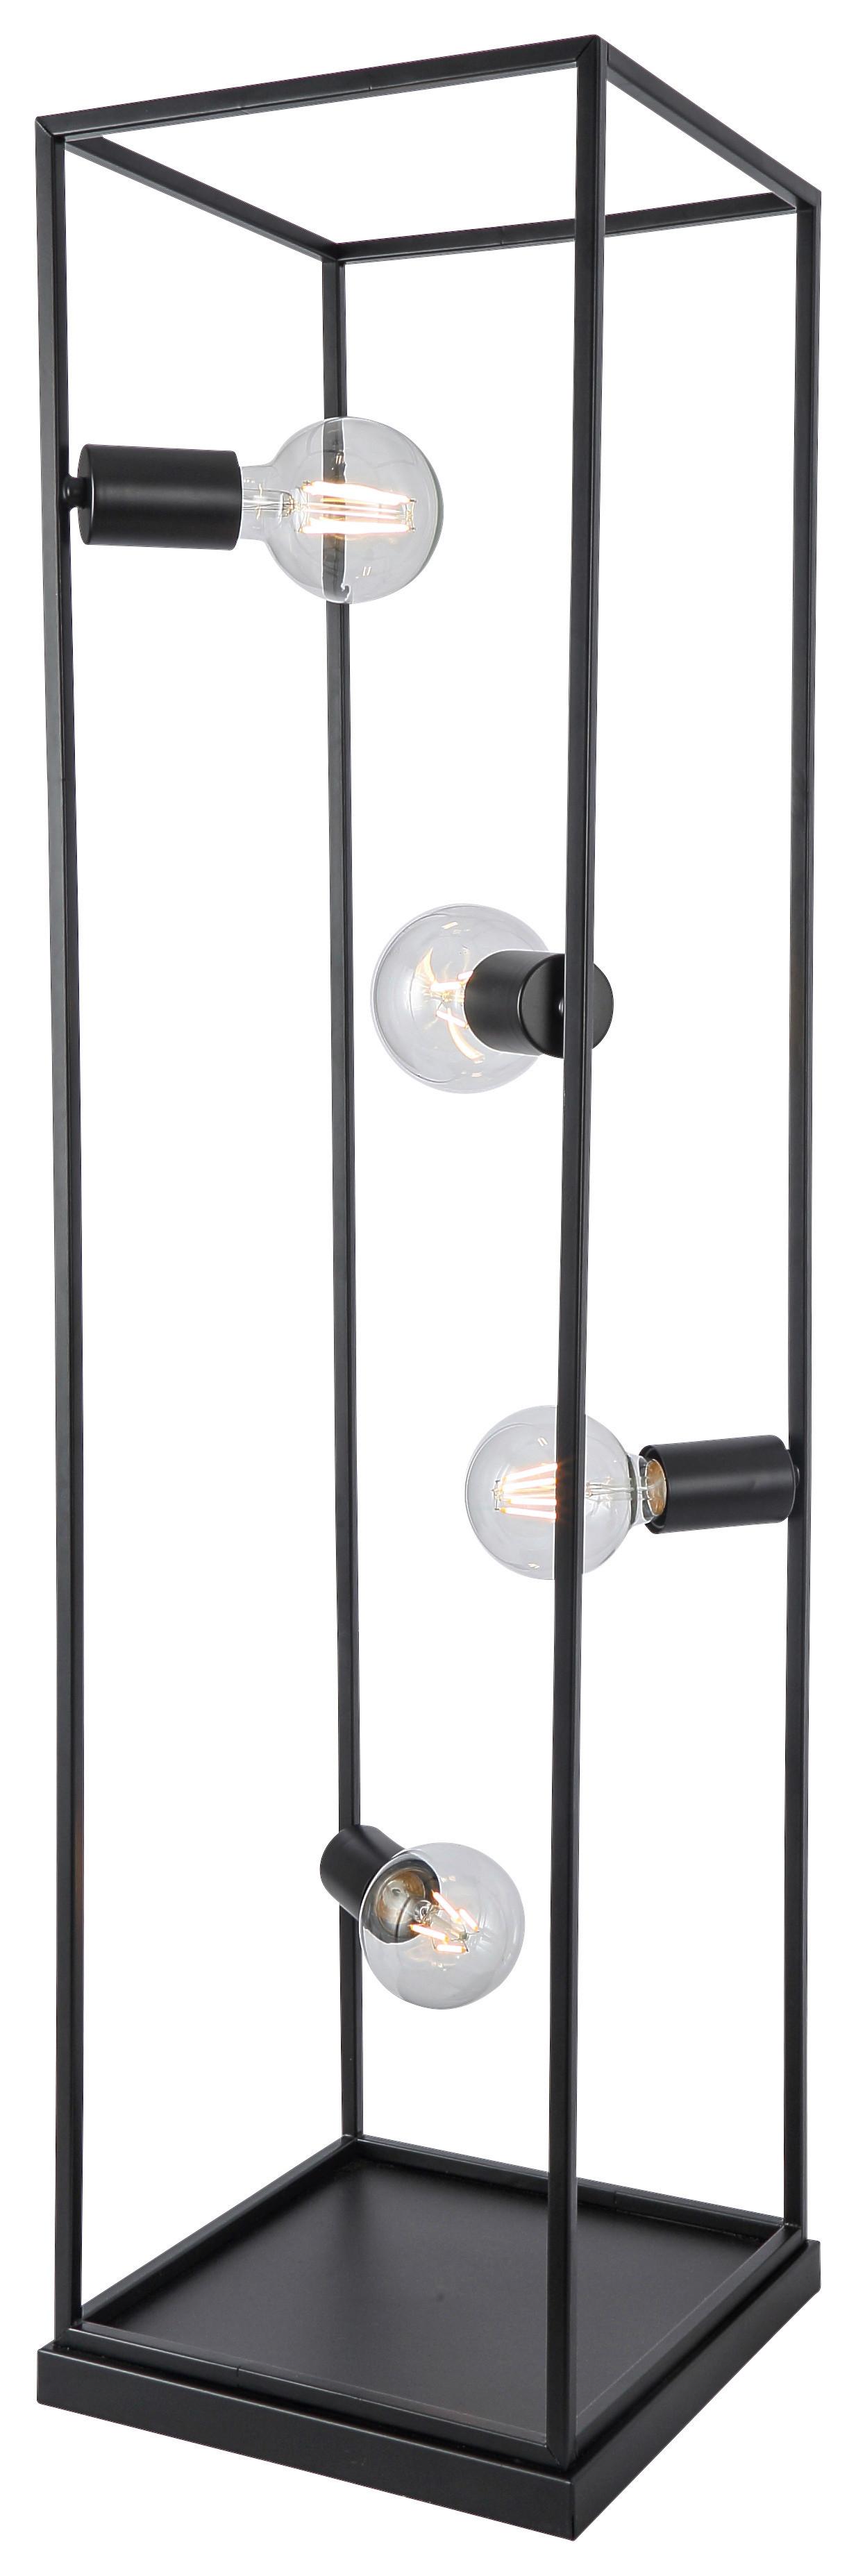 Stojací Lampa Qaudri 40 Watt, V: 100cm - černá, Konvenční, kov (27/26/130cm) - Premium Living